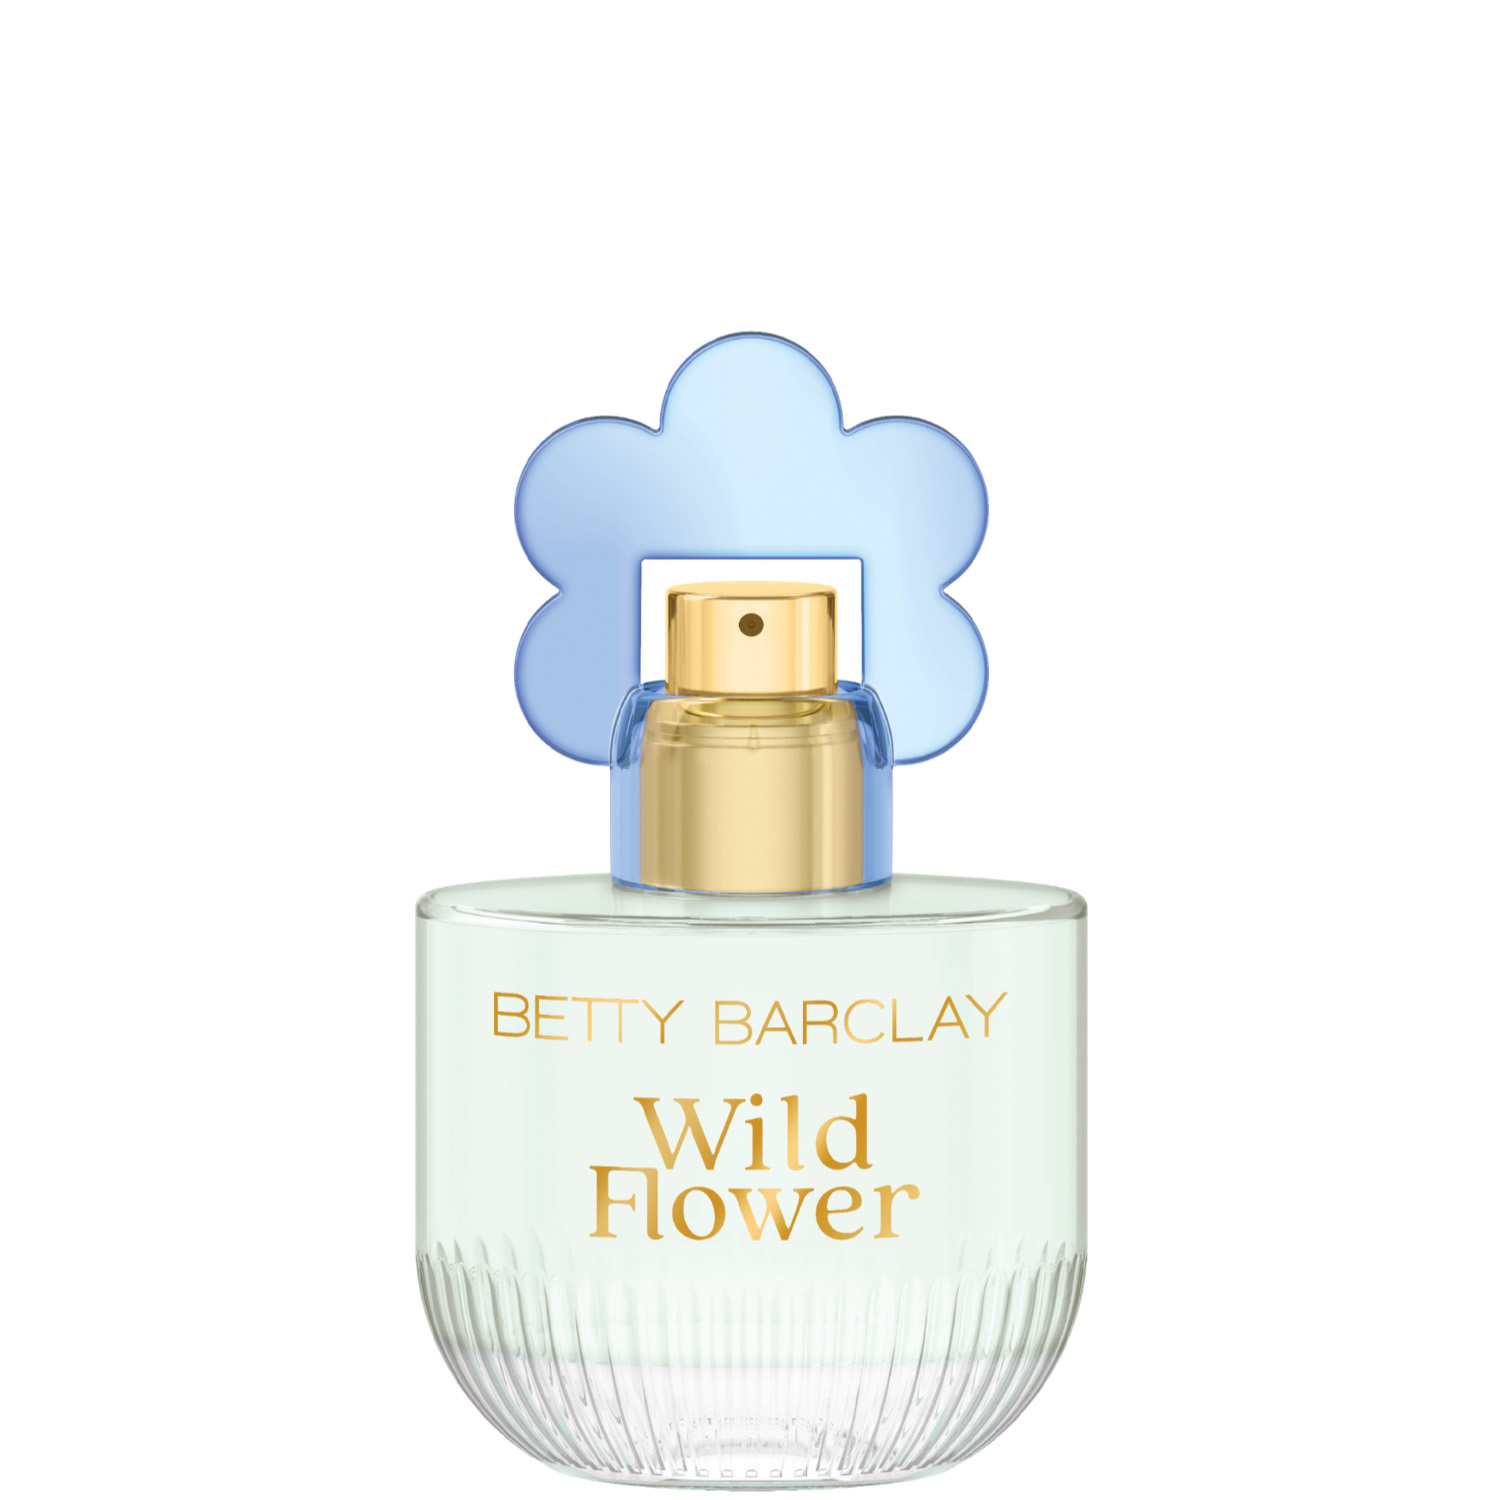 Betty Barclay Wild Flower Eau de Toilette 20ml